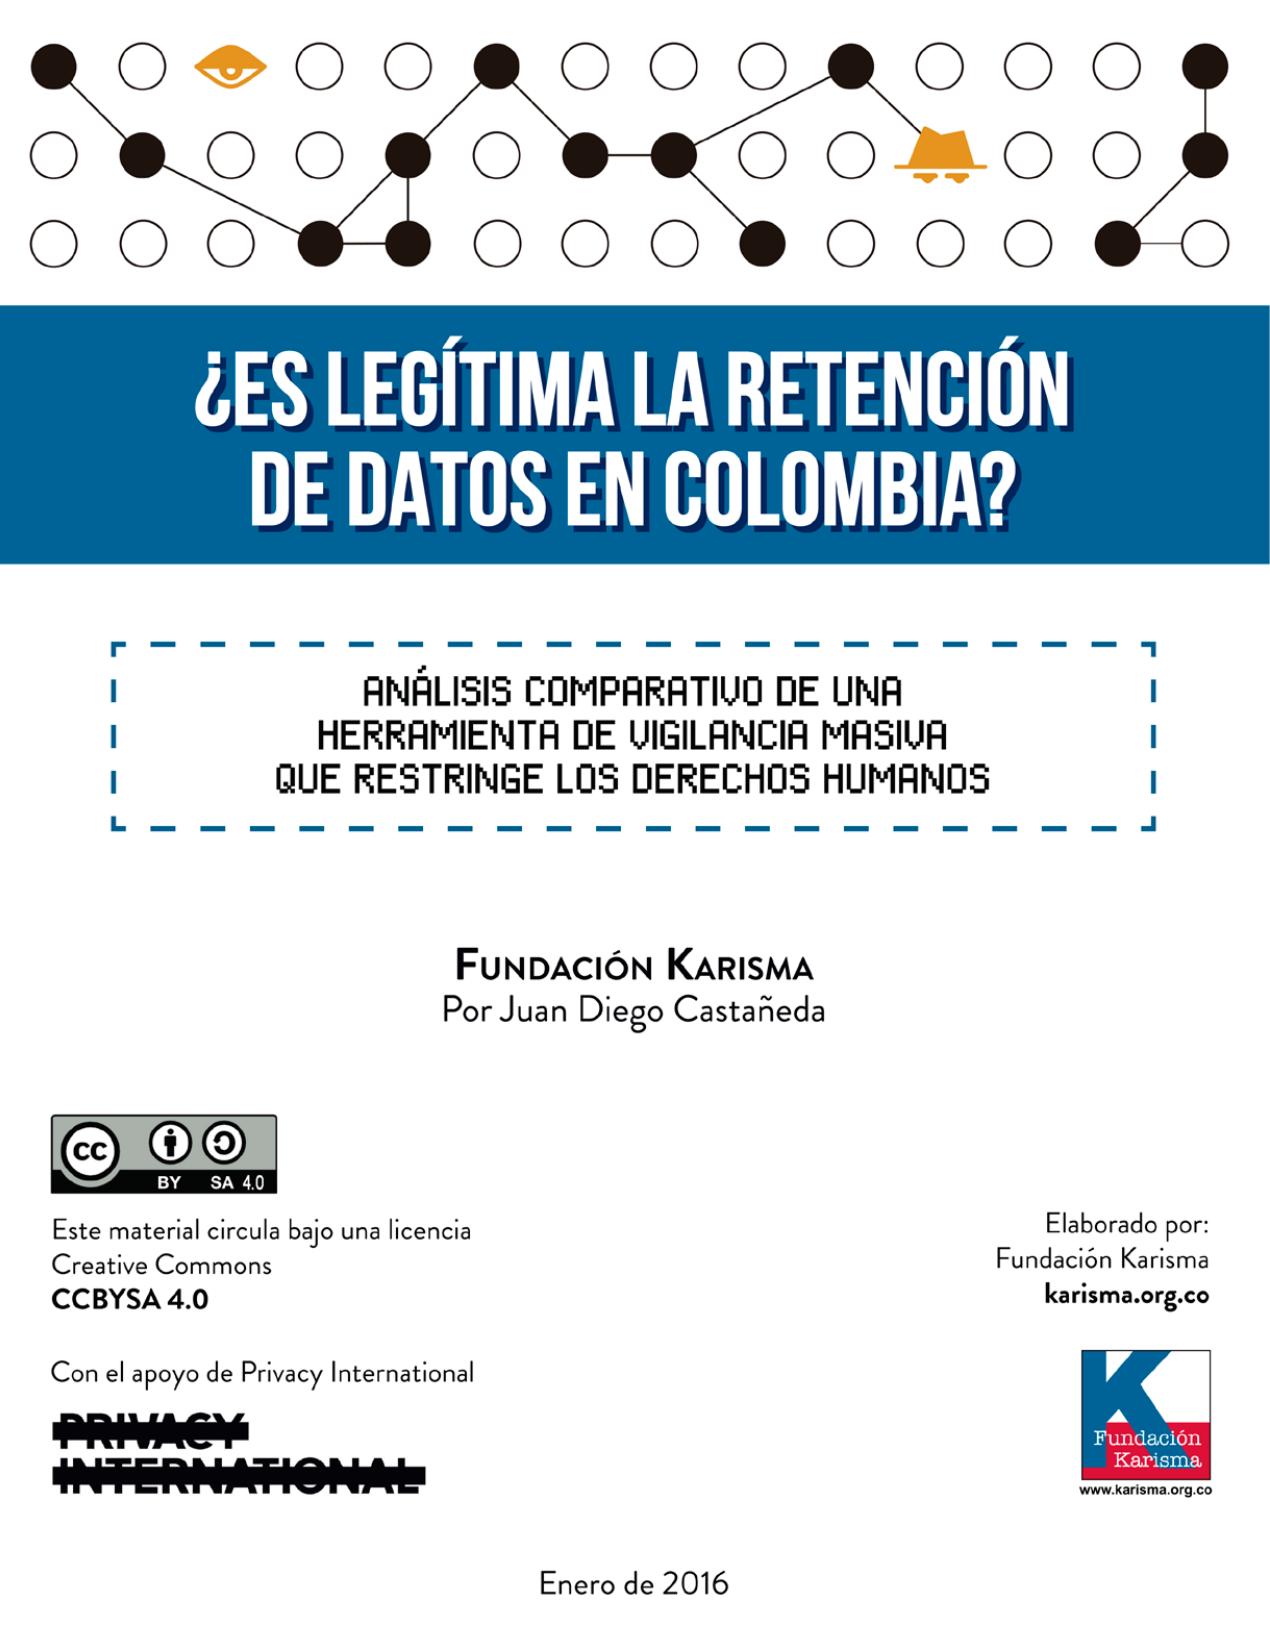 Es legítima la retención de datos en colombia? :: Análisis comparativo de una herramienta de vigilancia masiva que restringe los derechos humanos